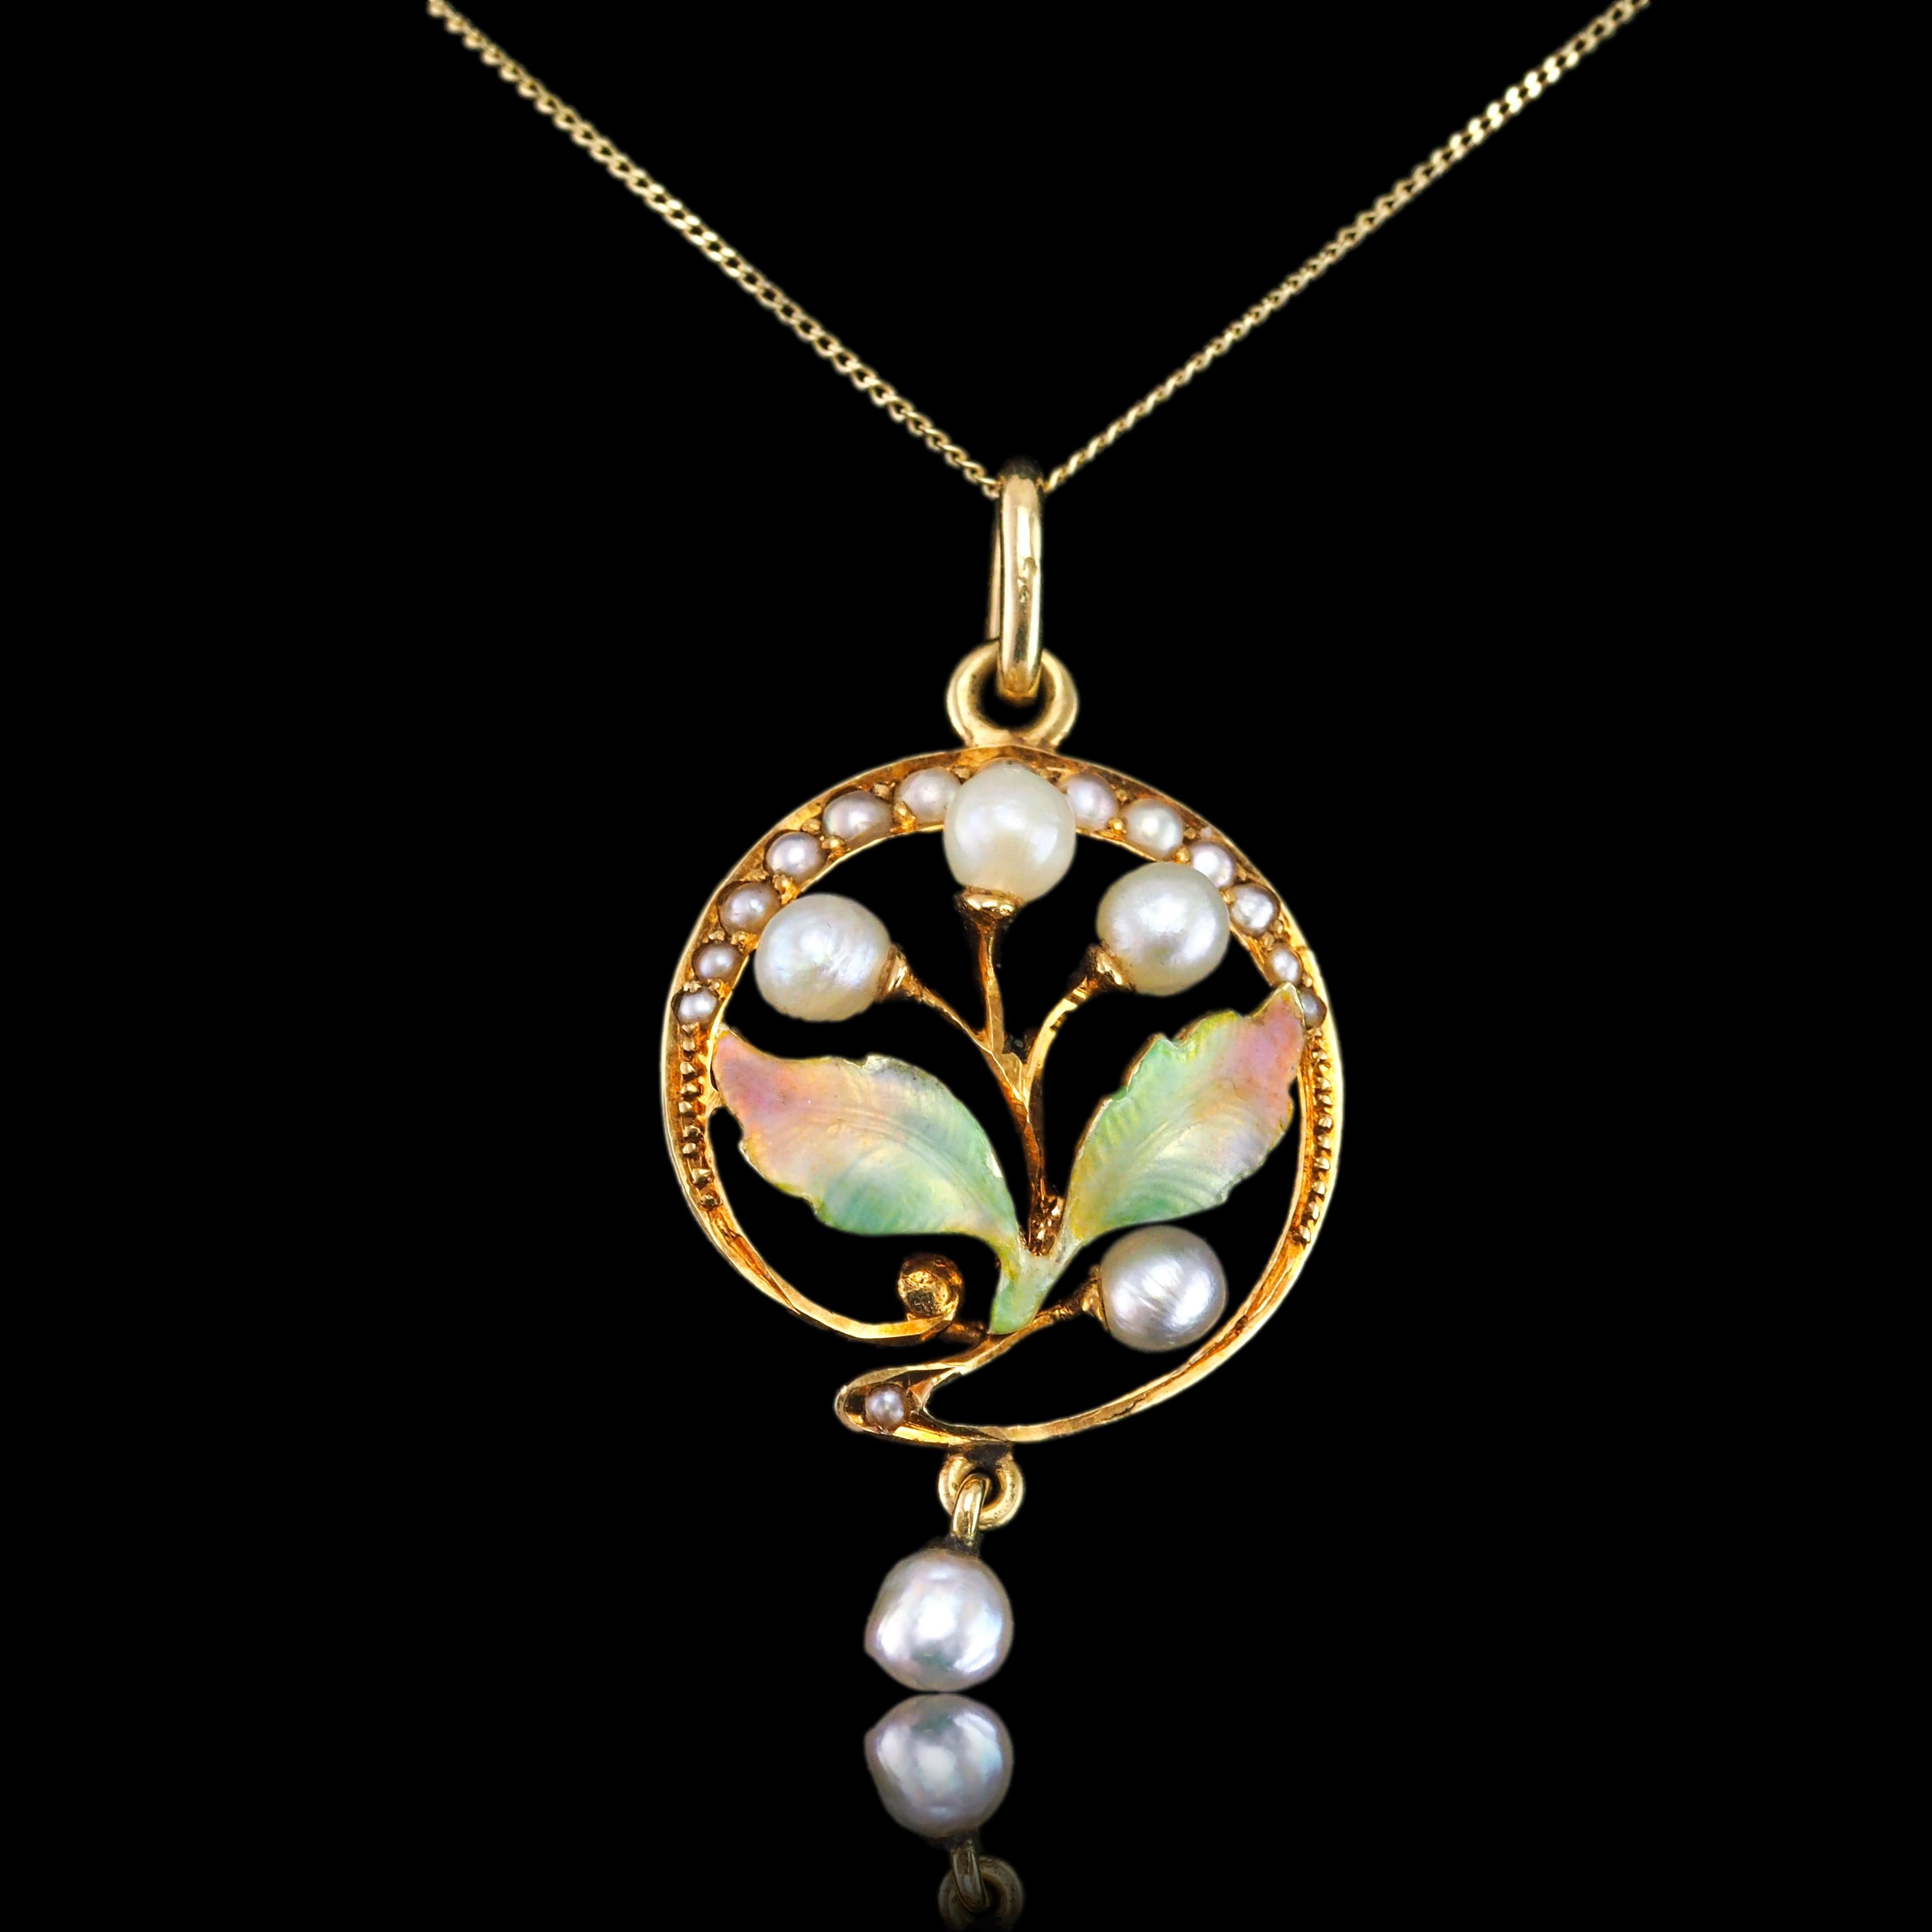 Antique Edwardian Pearl & Enamel Pendant Necklace 15K Gold Art Nouveau c.1910 For Sale 5